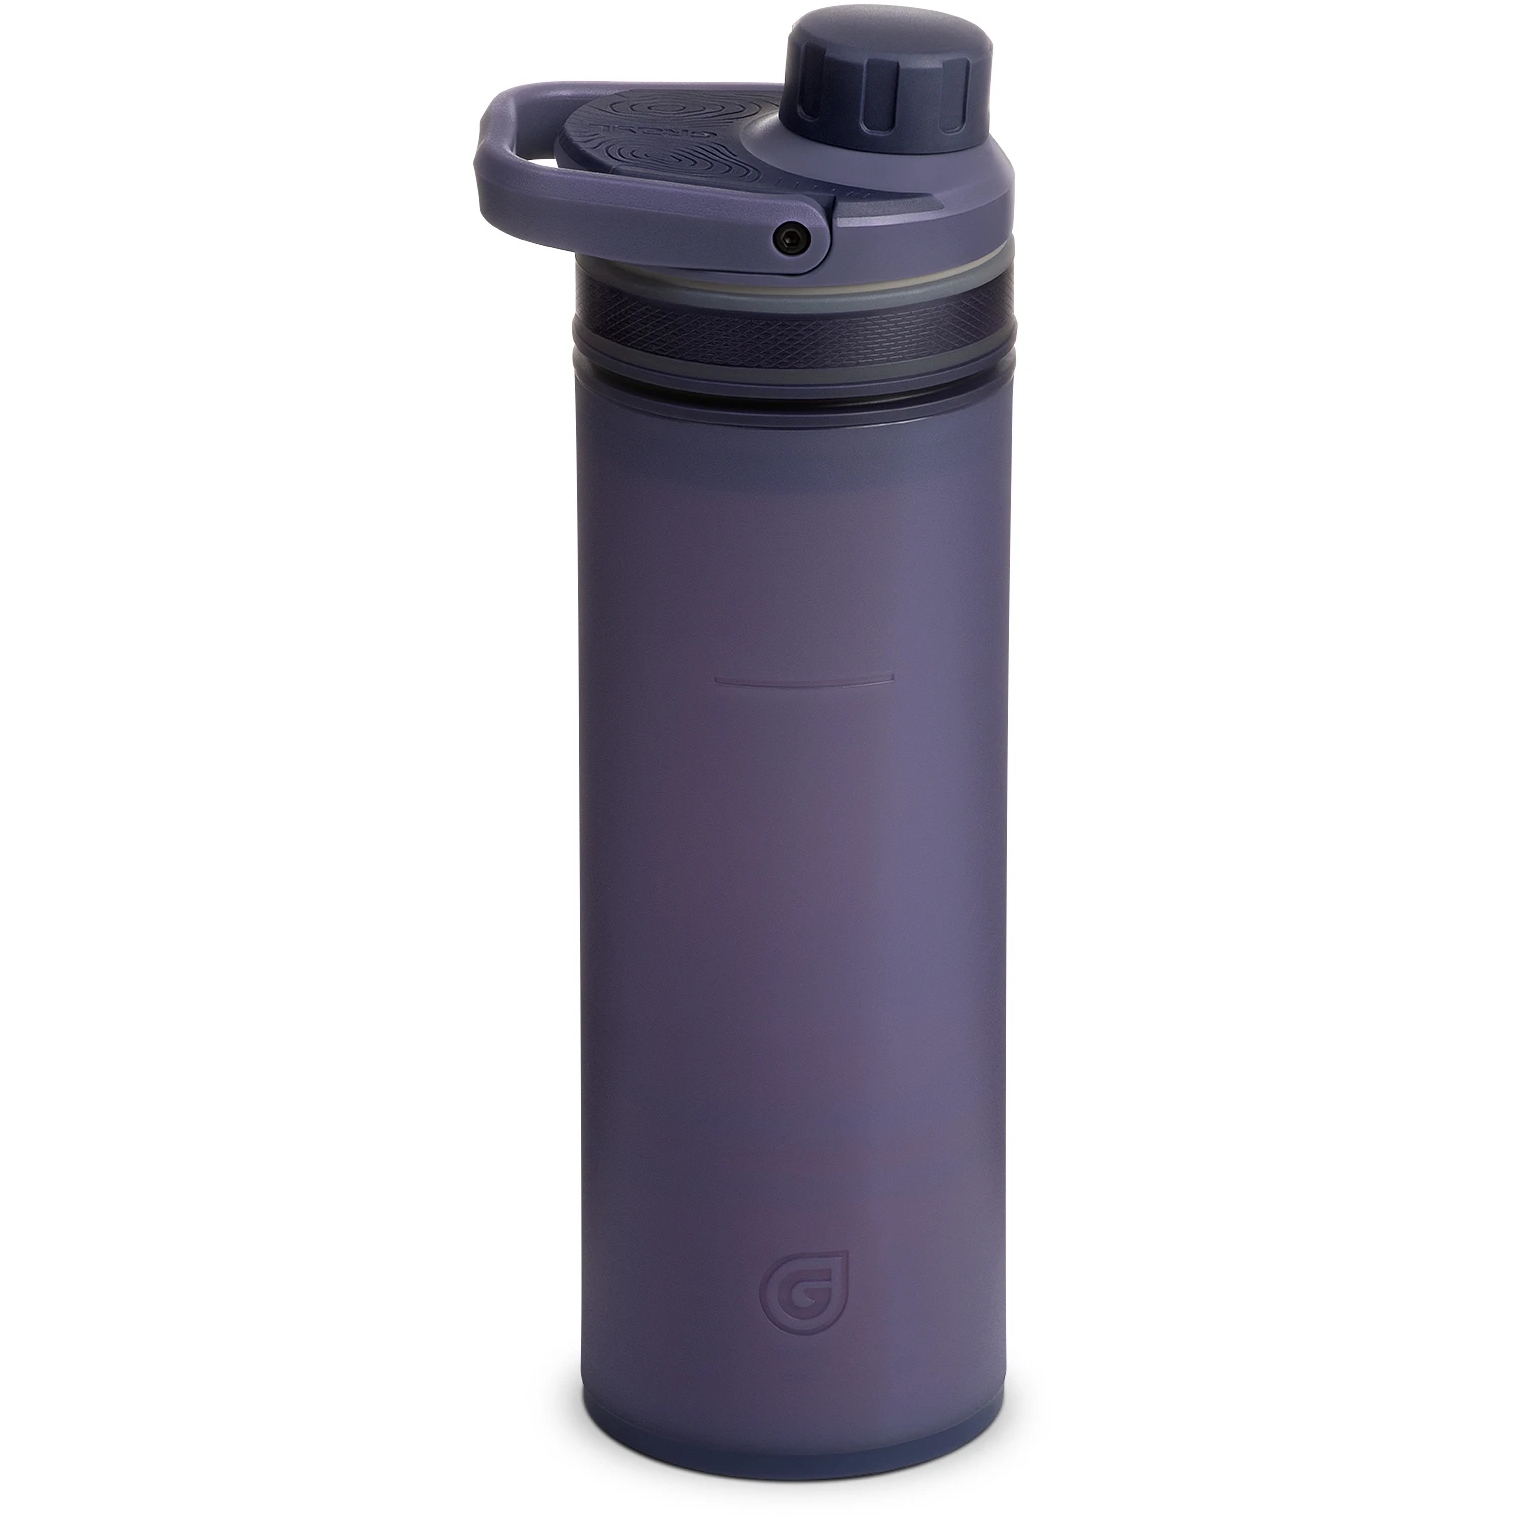 Produktbild von Grayl UltraPress Purifier Trinkflasche mit Wasserfilter - 500ml - Mignight Granite